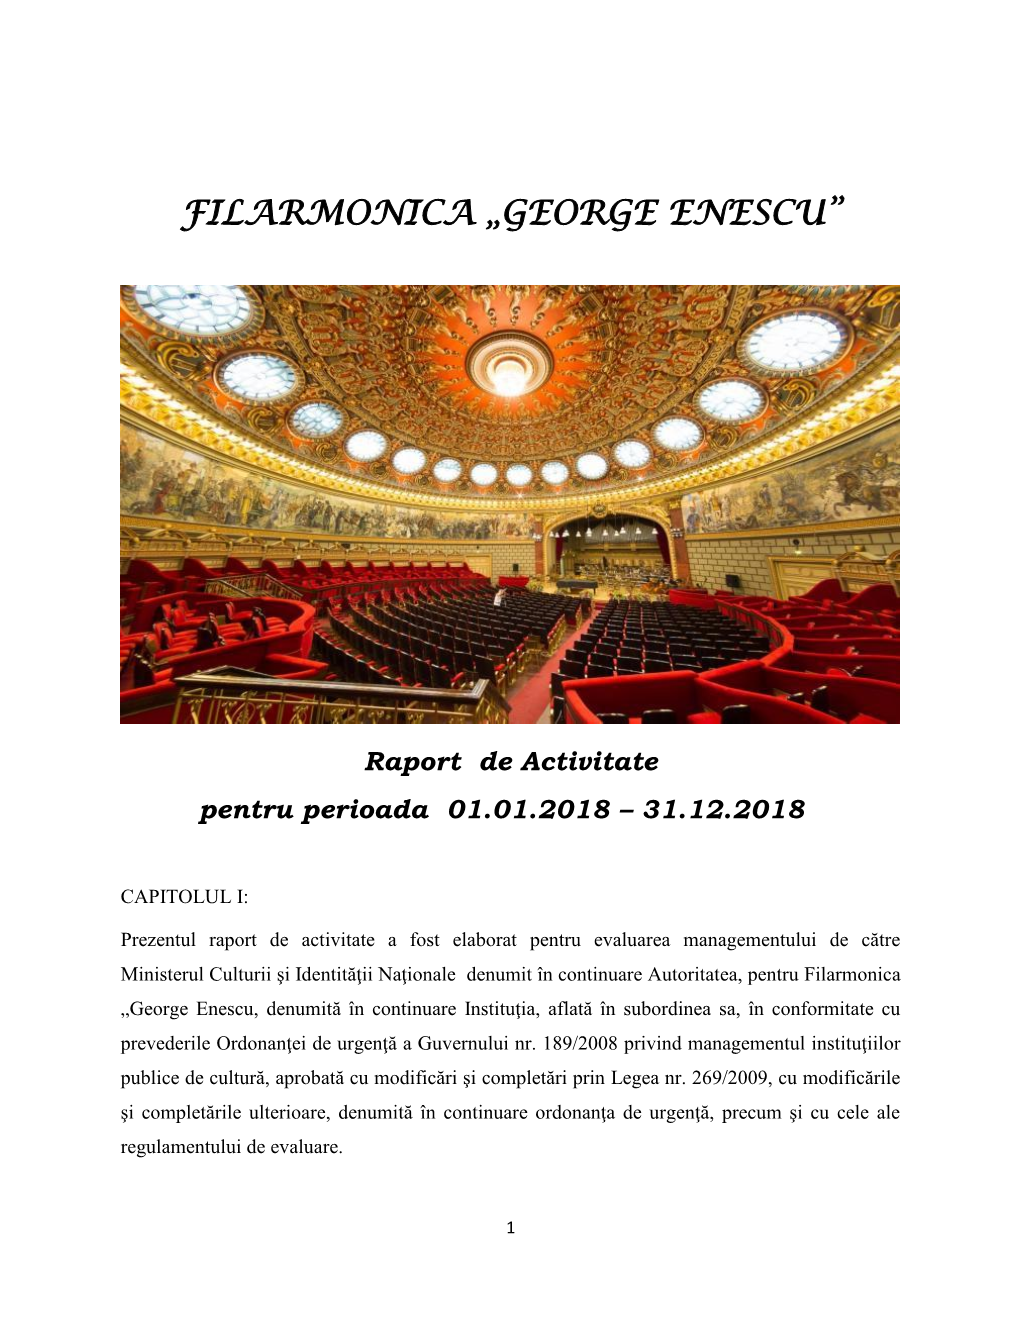 Filarmonica „George Enescu”